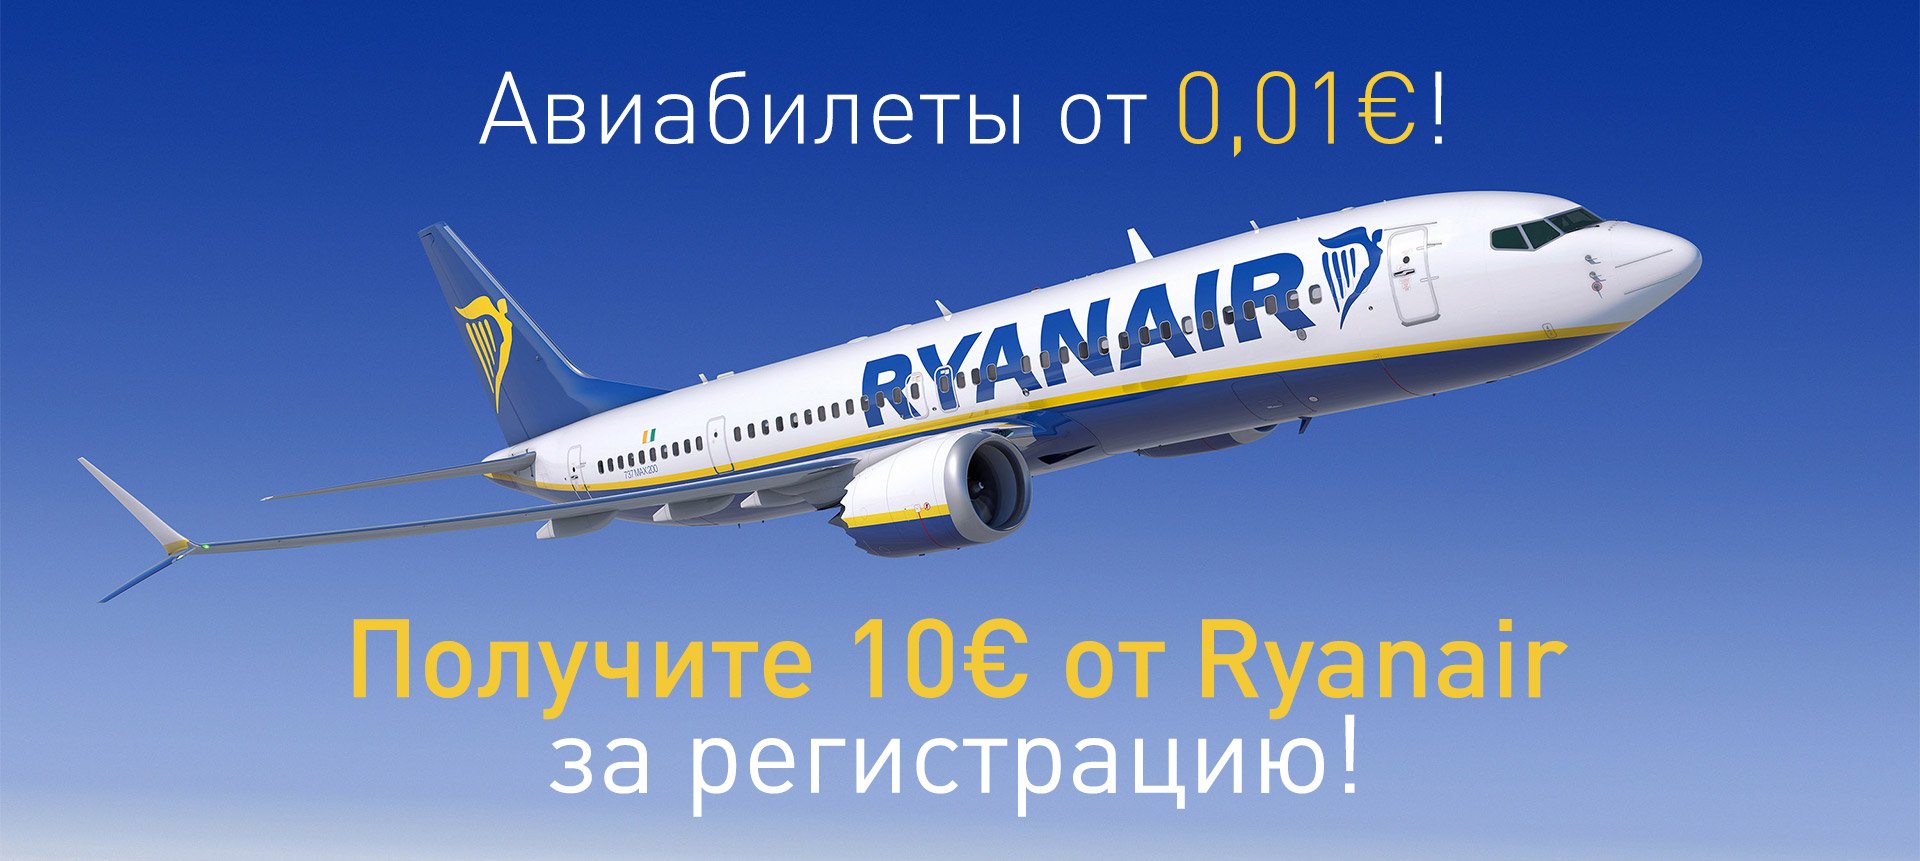 Супер! Получите 10€ от Ryanair за регистрацию! Авиабилеты от 0,01€!